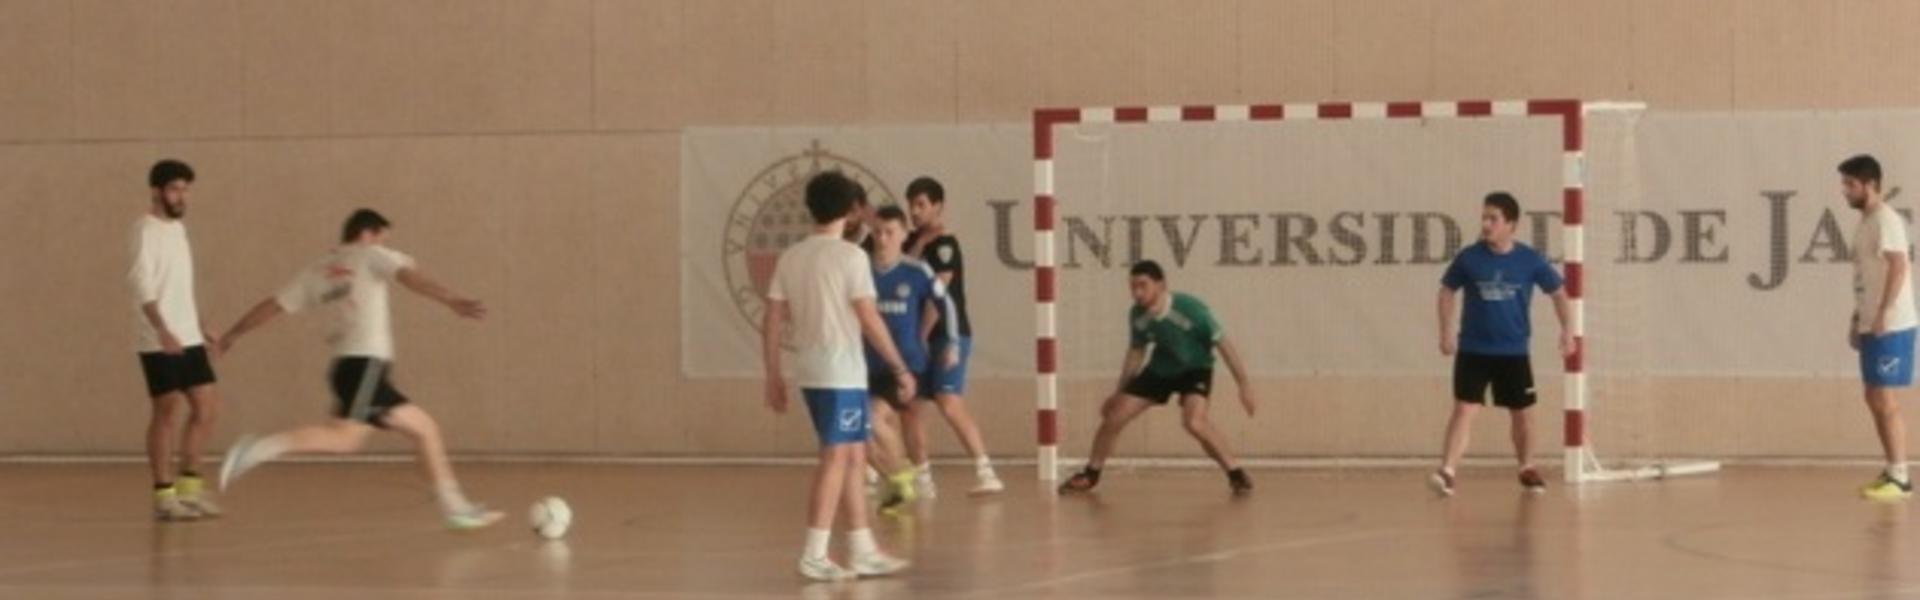 Trofeo Universidad de Jaén de fútbol sala en Linares